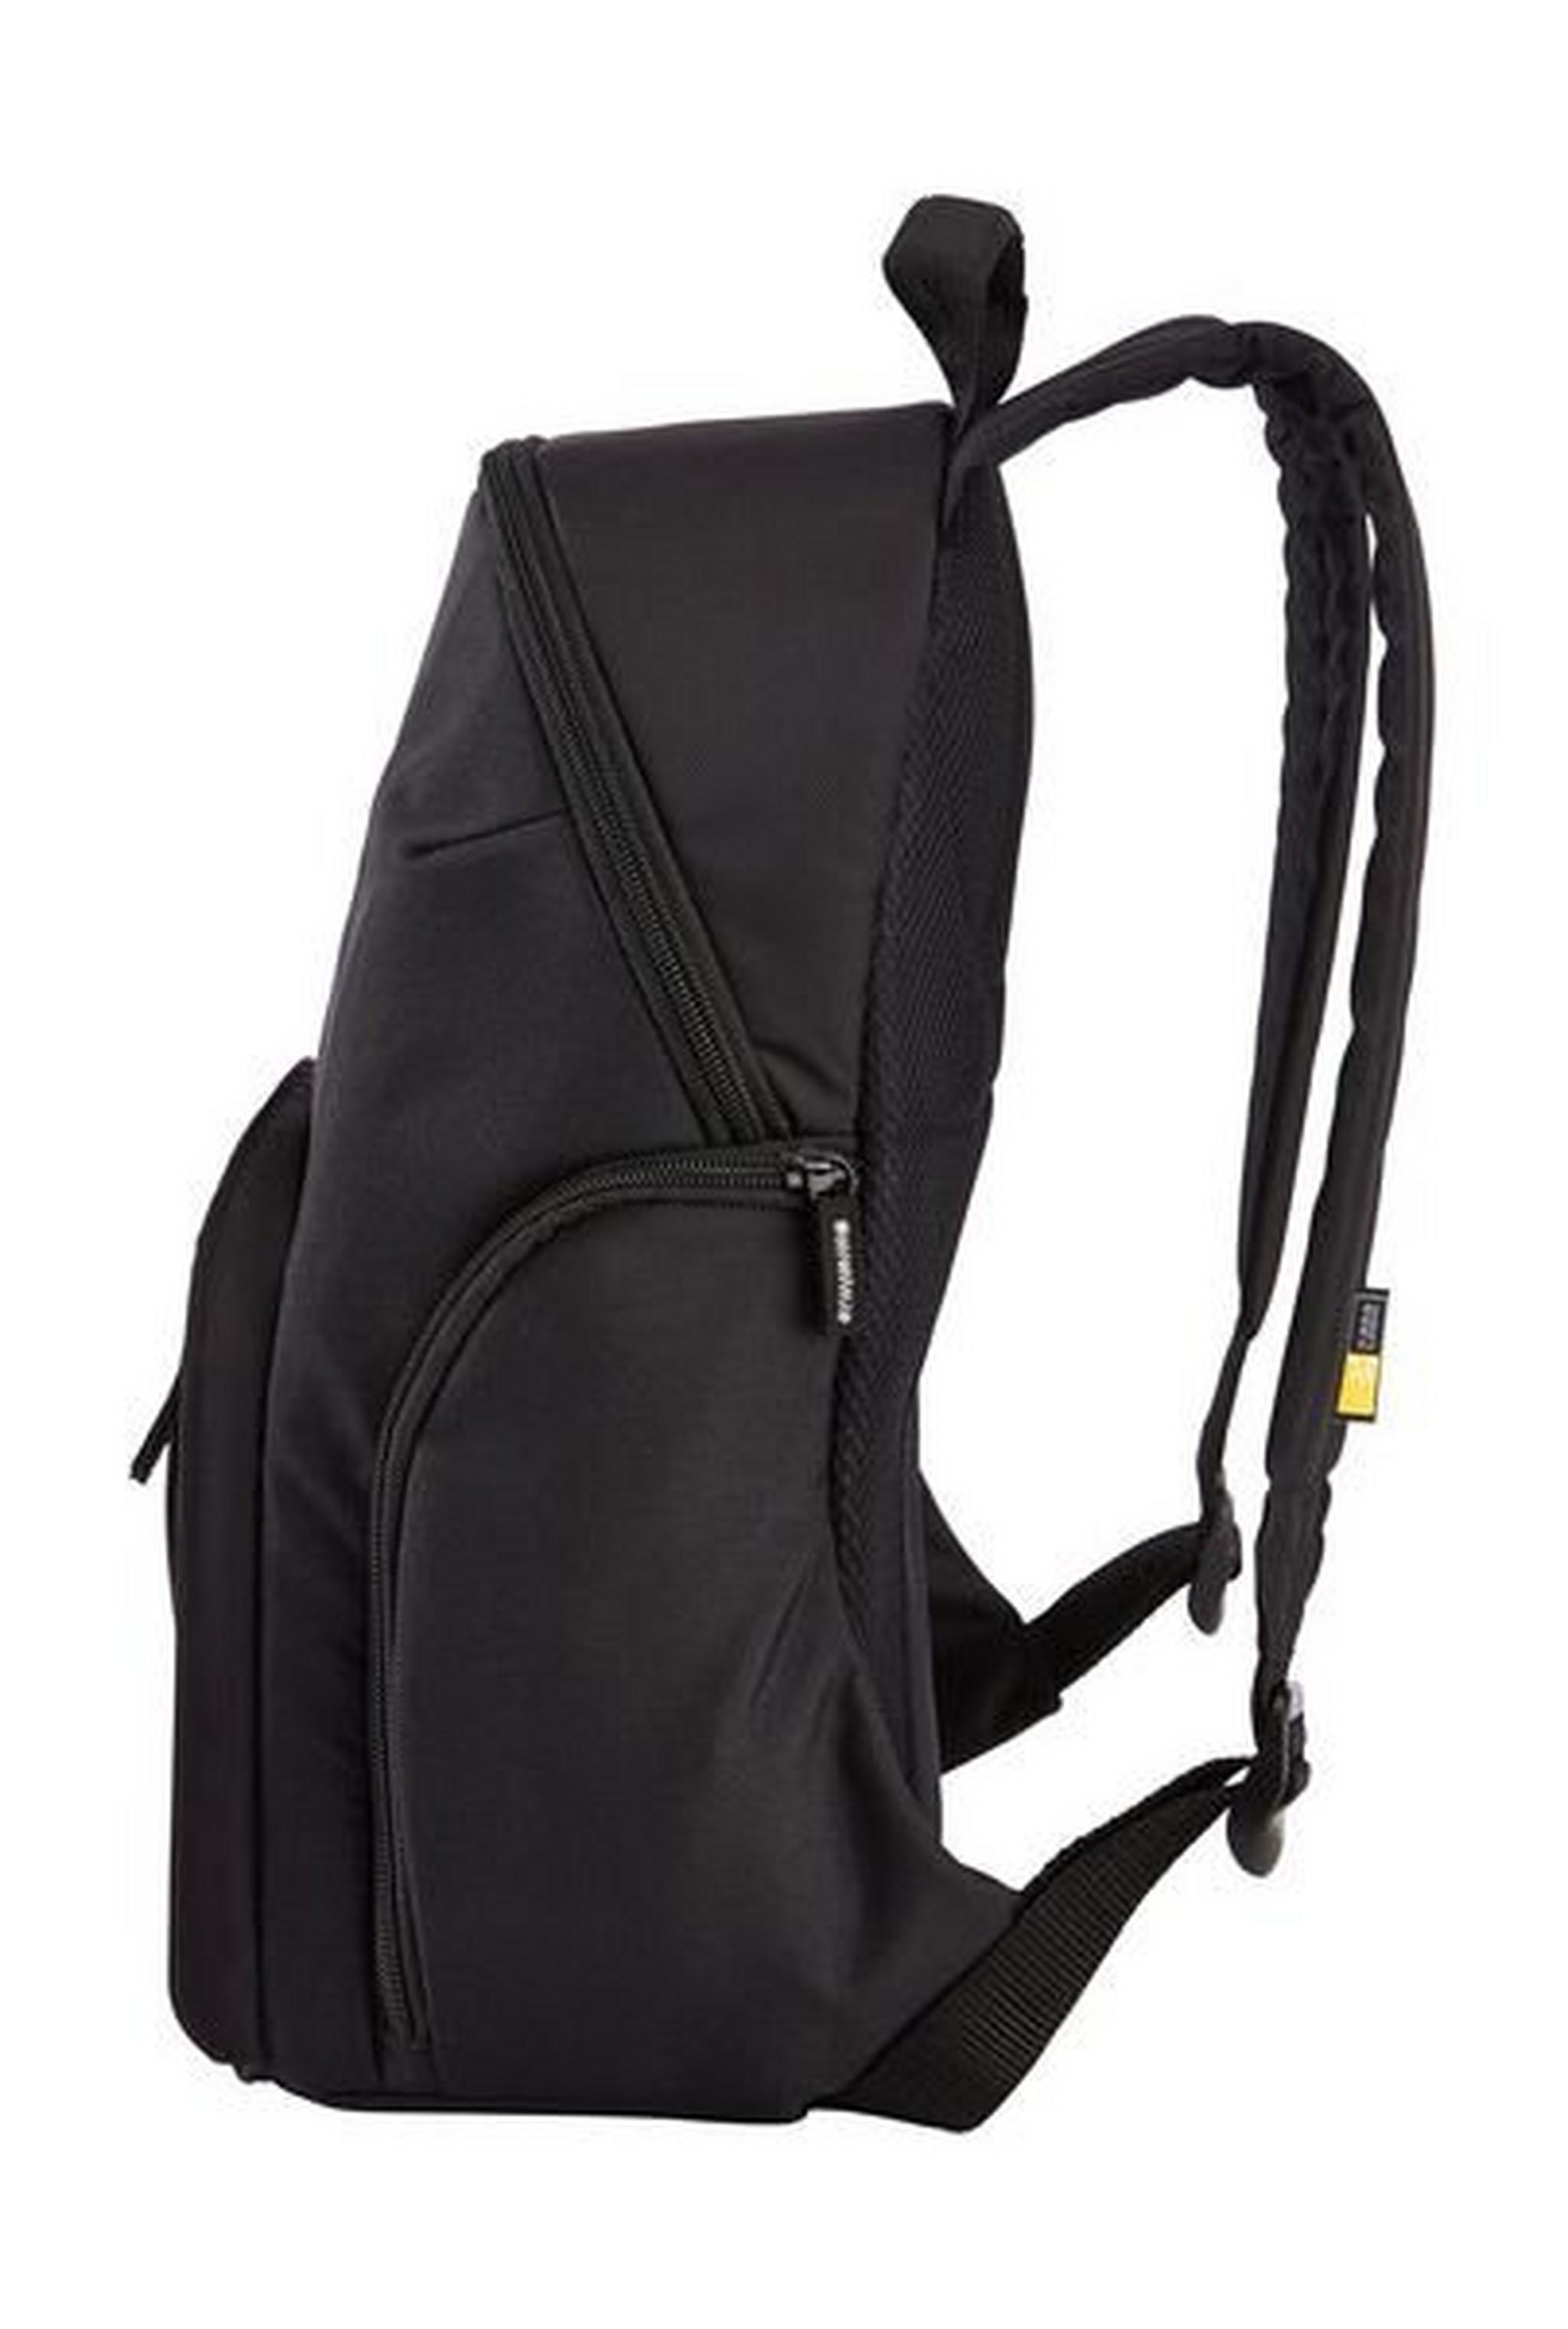 Case Logic TBC411 Backpack For DSLR Camera - Black